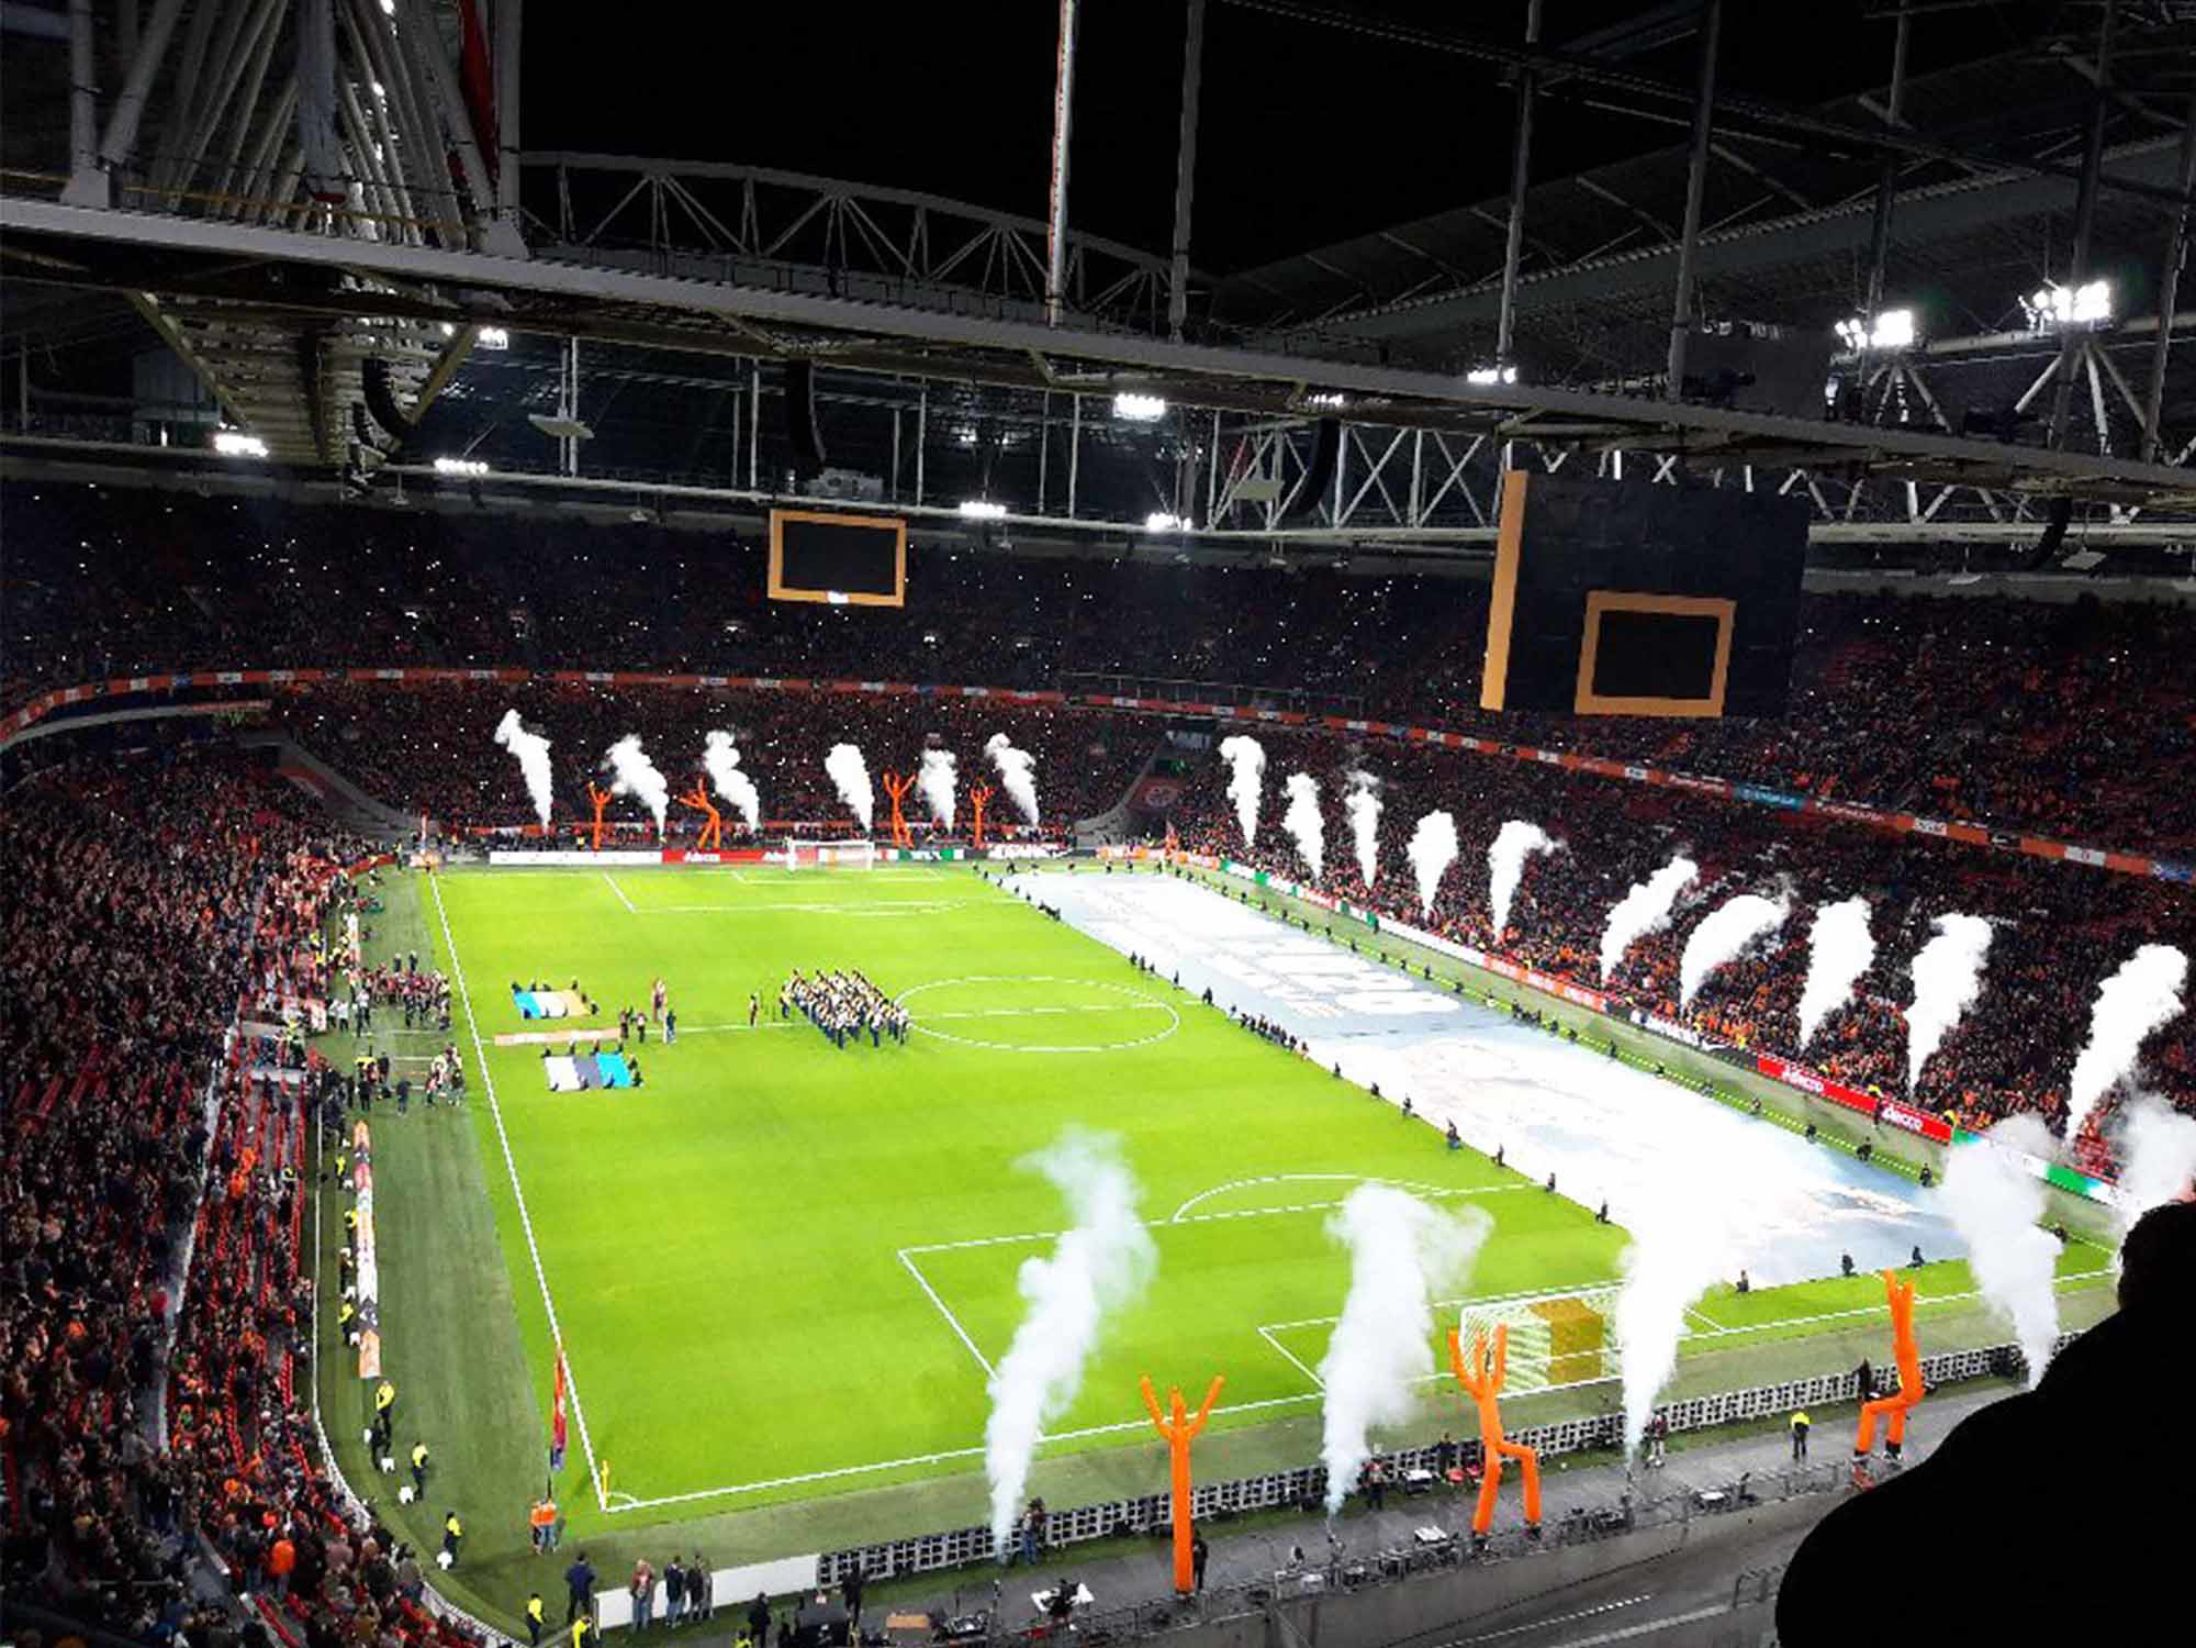 Top Attractions in Amsterdam - Ajax Stadium